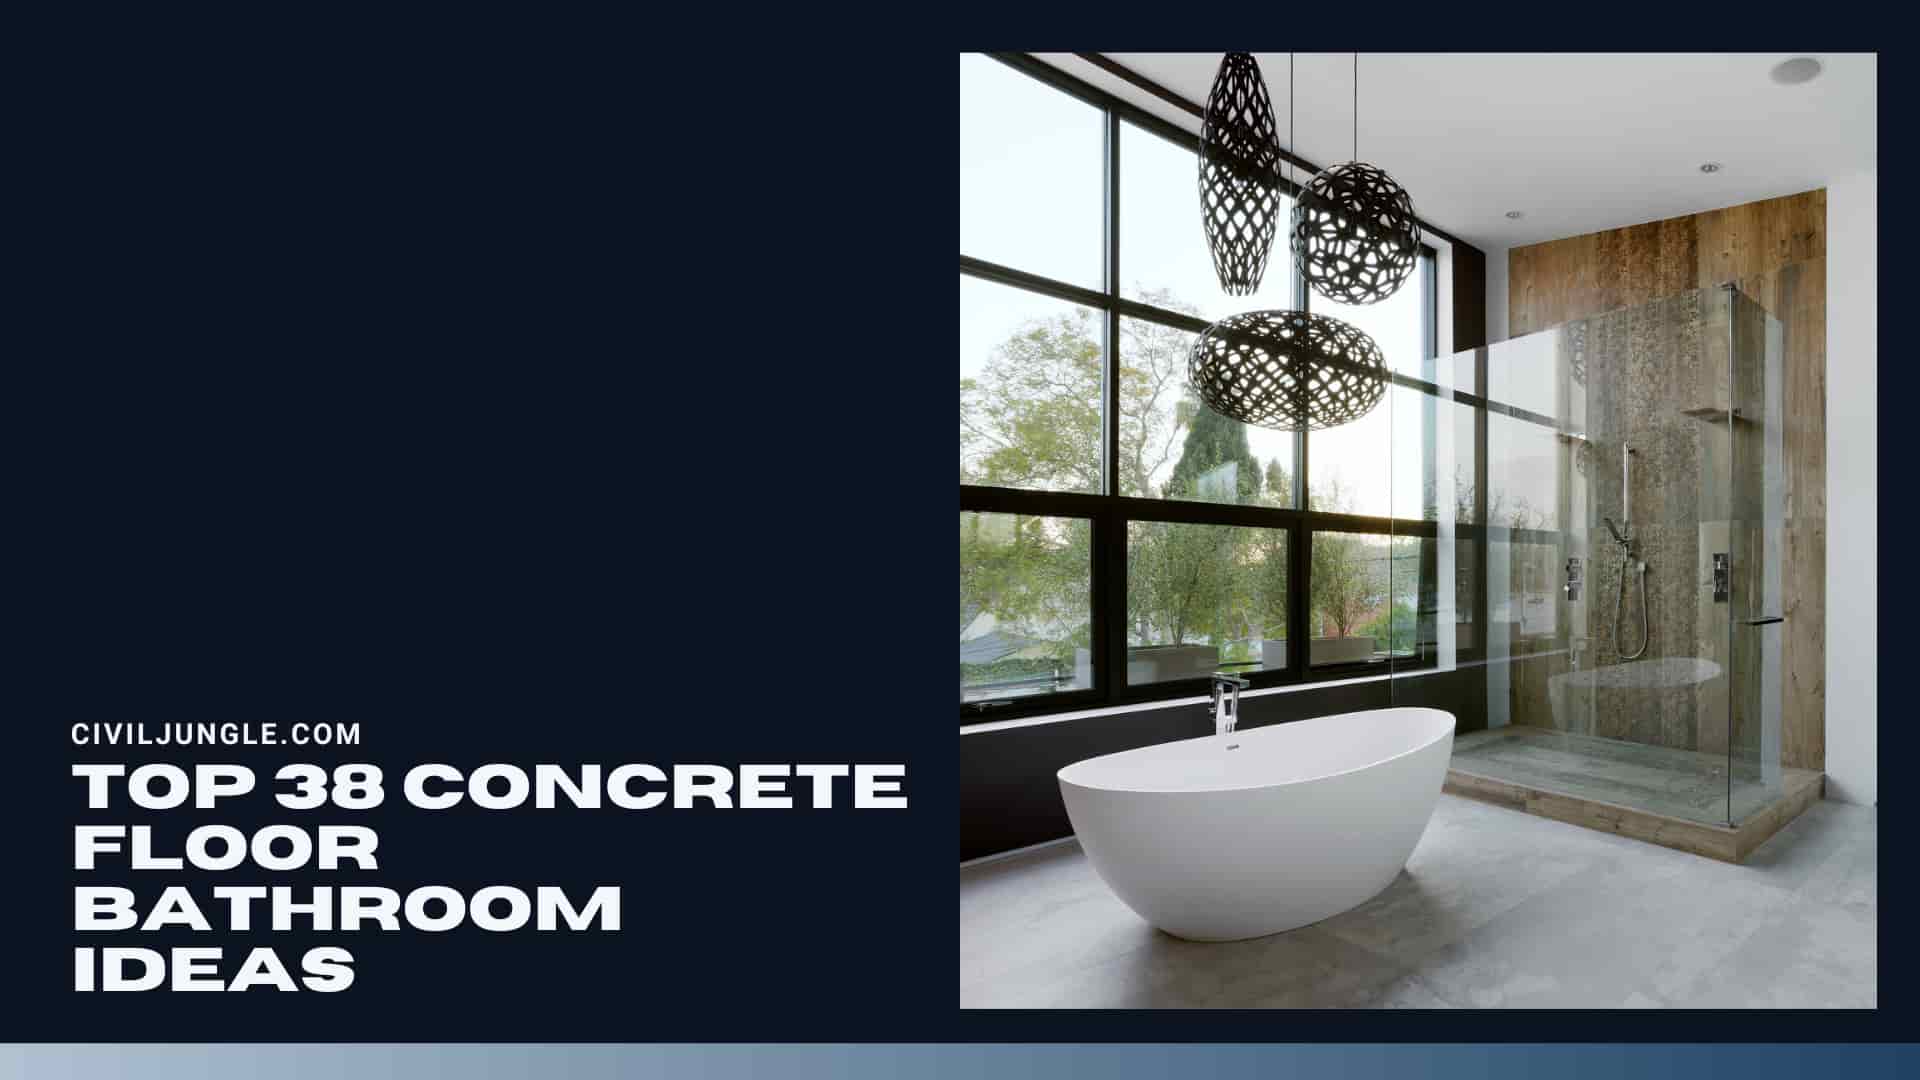 Top 38 Concrete Floor Bathroom Ideas